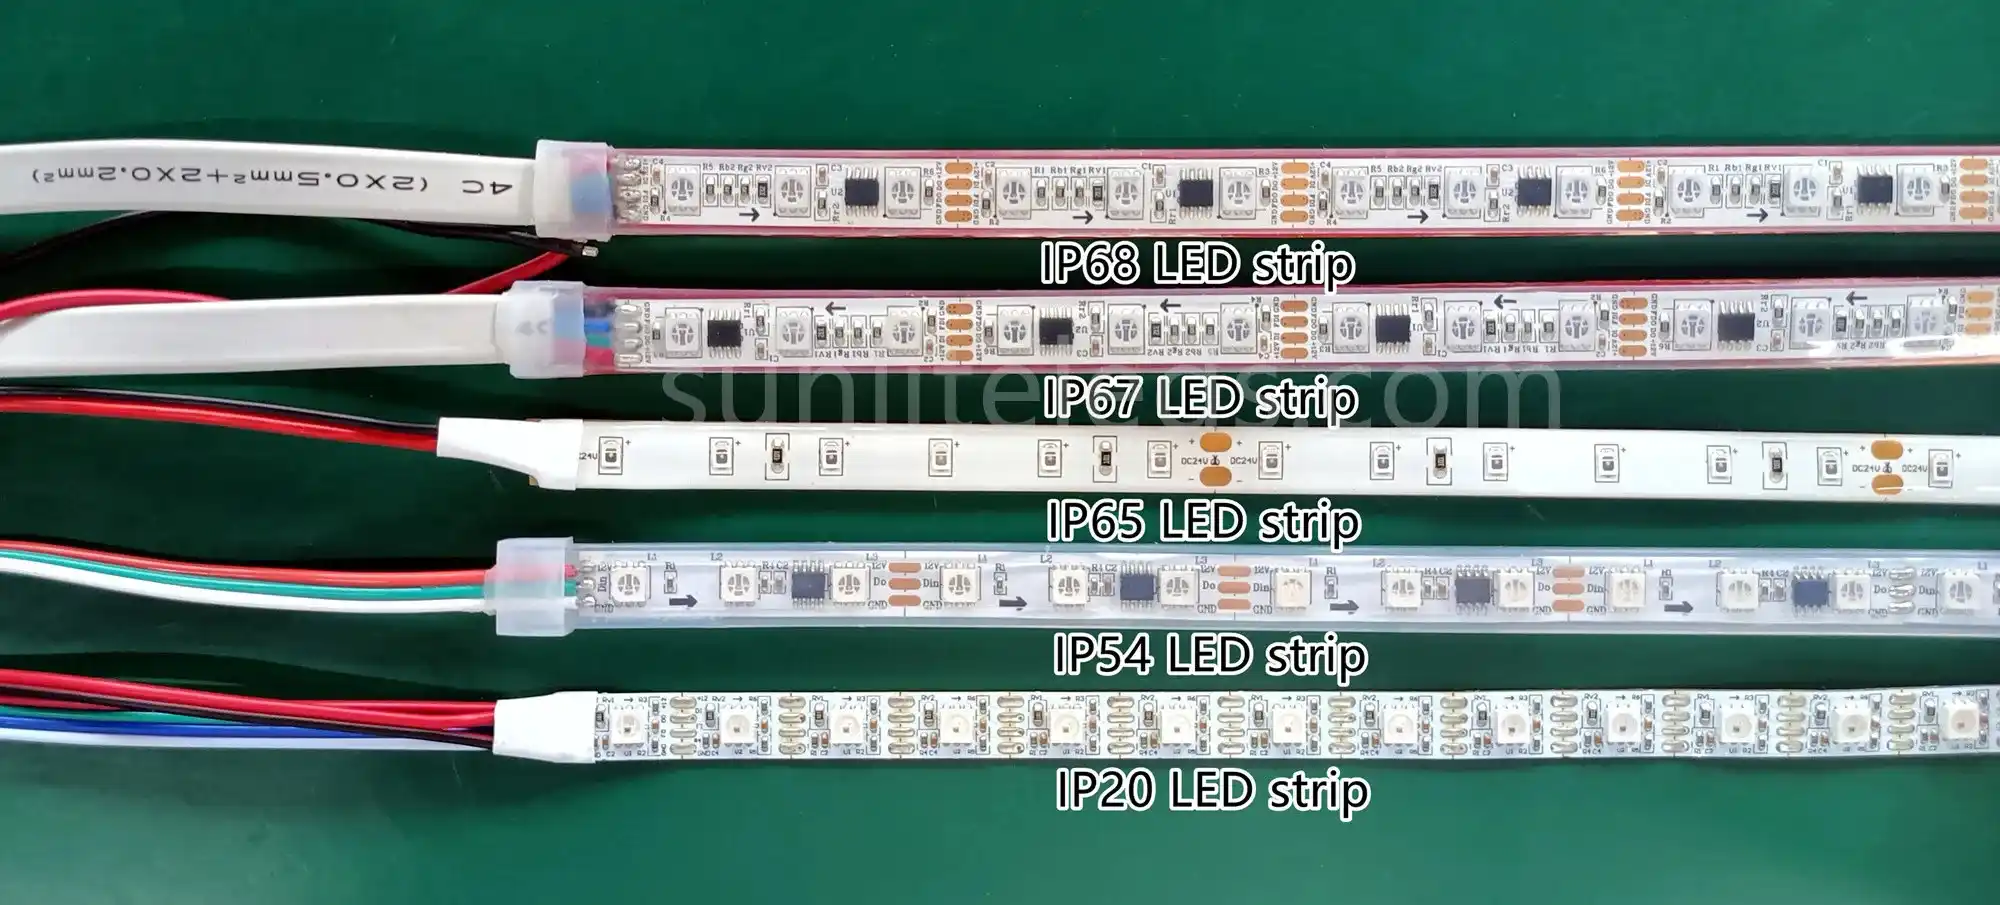 LED Strip IP20 VS IP65 VS IP67 VS IP54 VS IP68